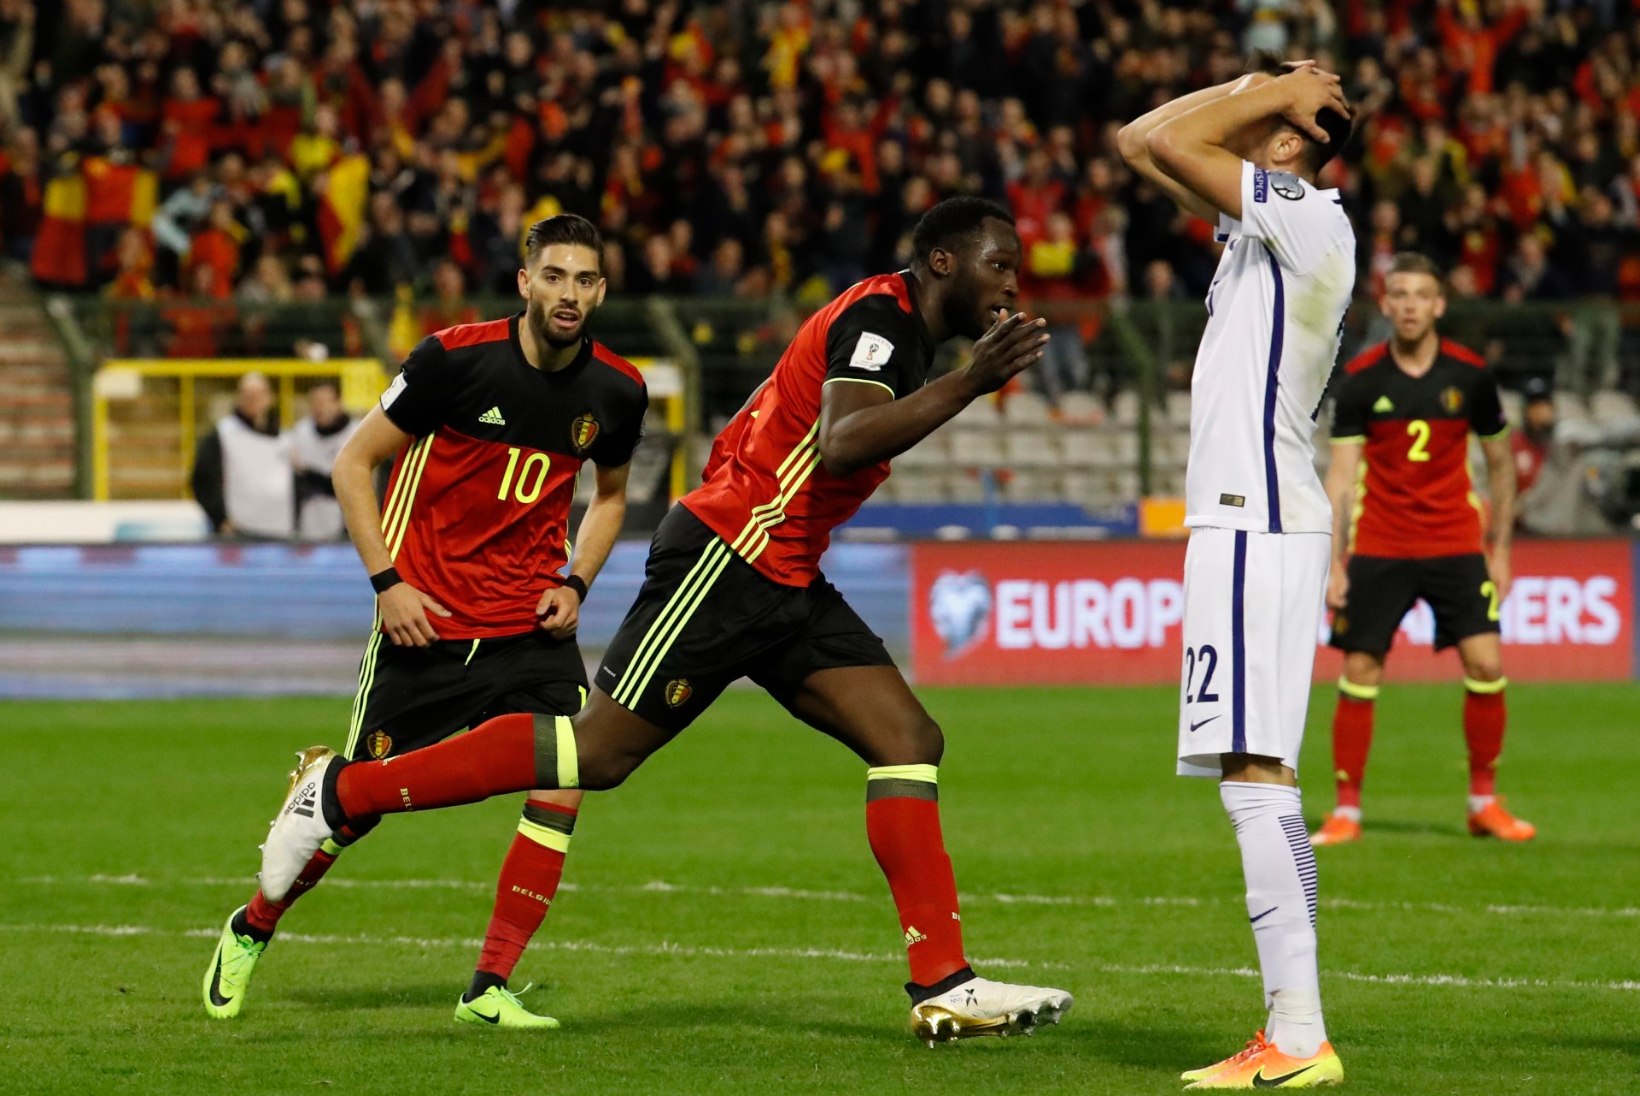 FOTOD | Põnev MM-valiksari: Ronaldo jõudis vinge tähiseni, Belgia pääses viimasel hetkel häbist